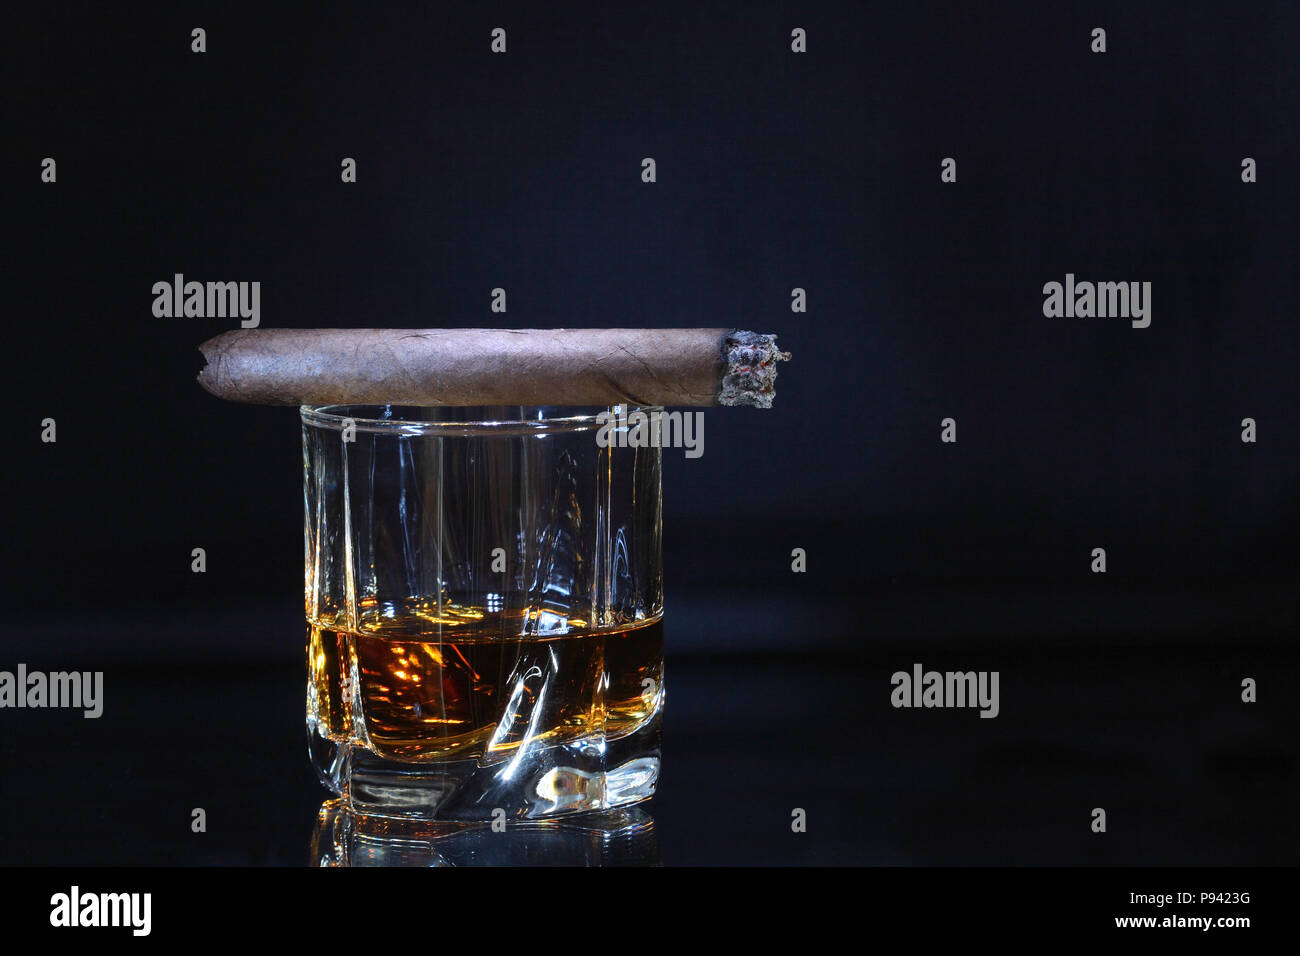 Cigare cubain couchée sur verre de whisky isolé sur fond sombre with copy space Banque D'Images